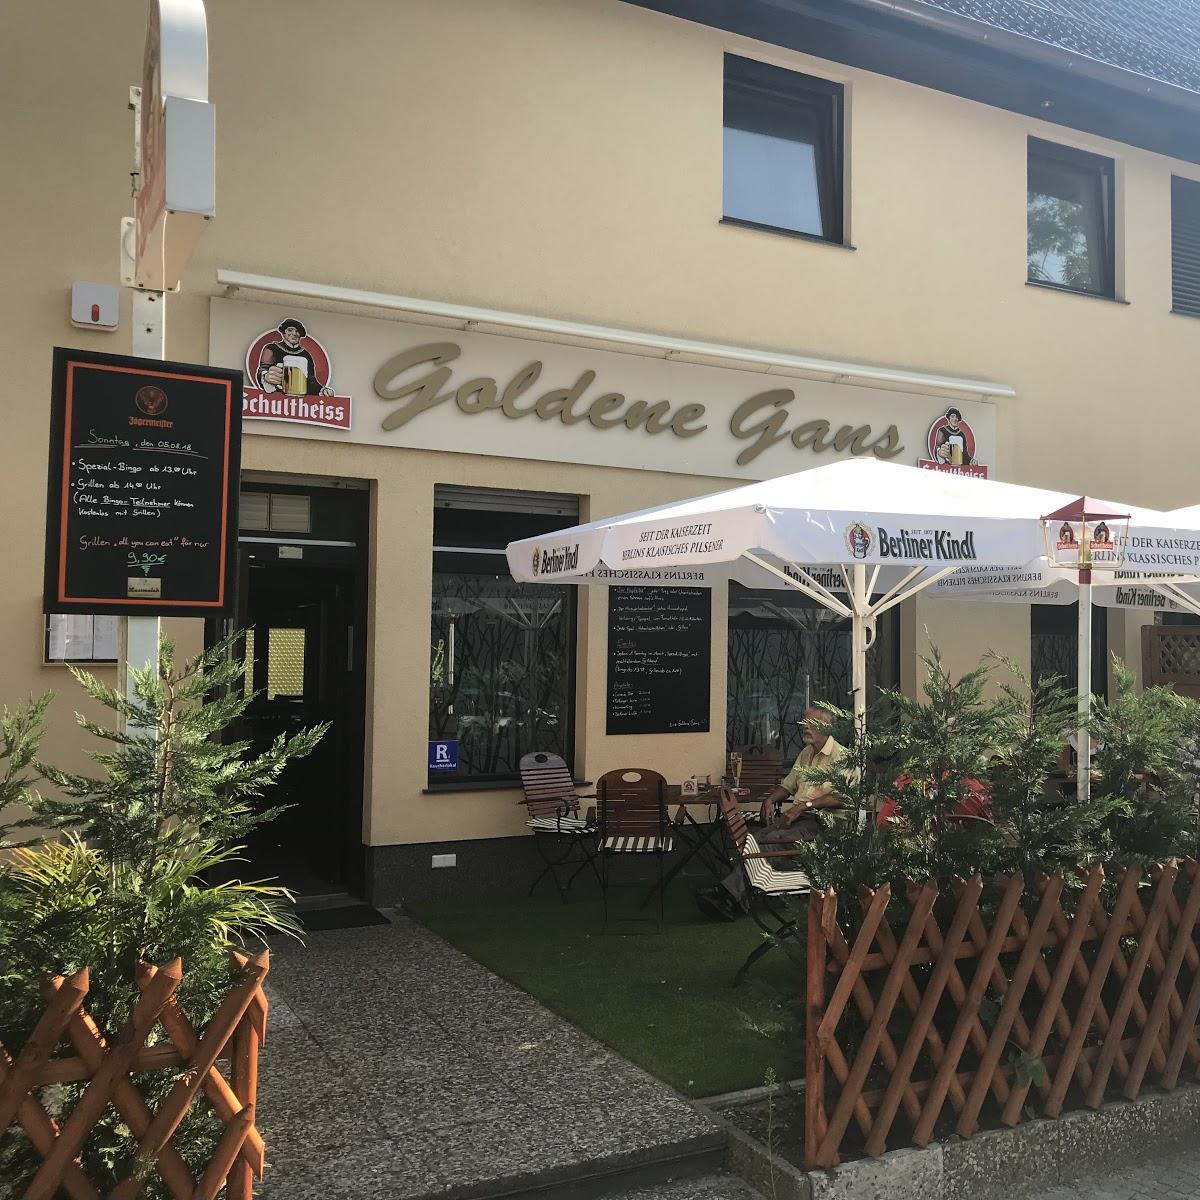 Restaurant "Die Goldene Gans" in Berlin